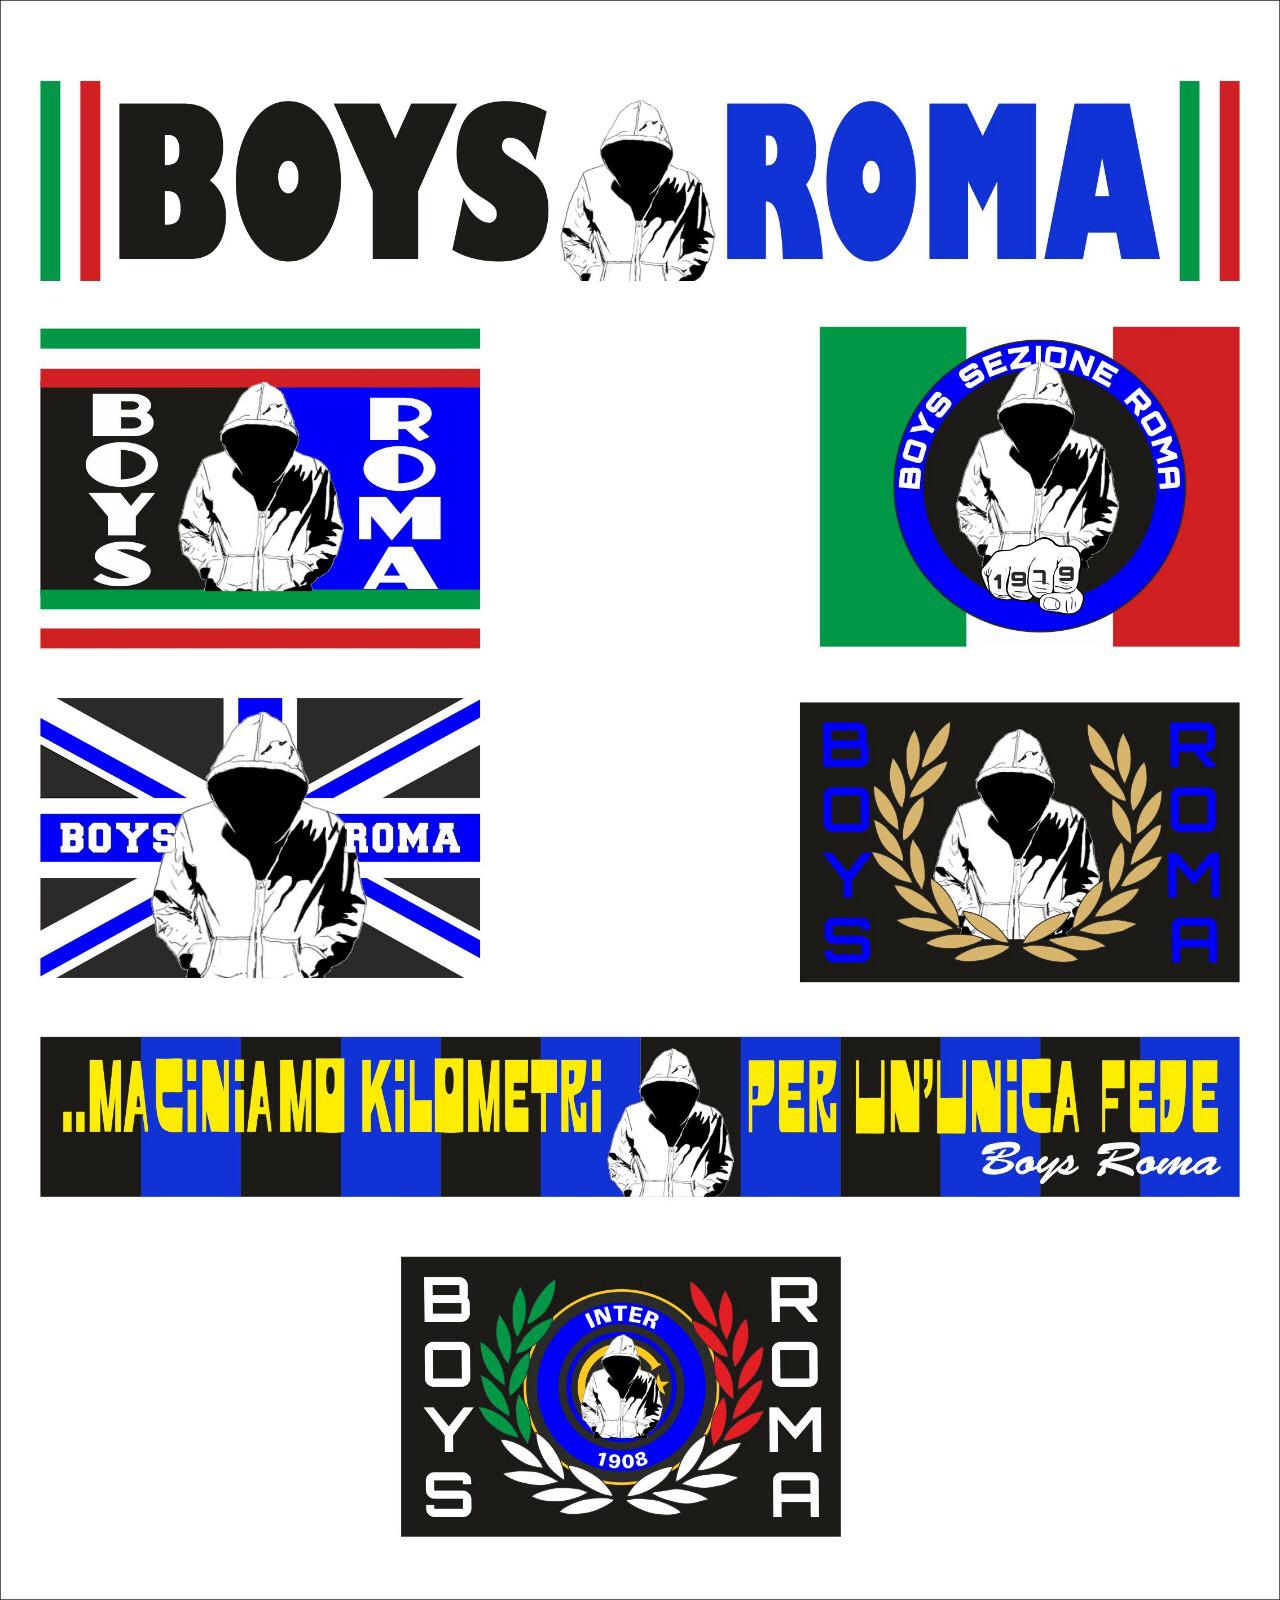 NUOVI ADESIVI BSR 1979 – Boys sezione Roma 1979